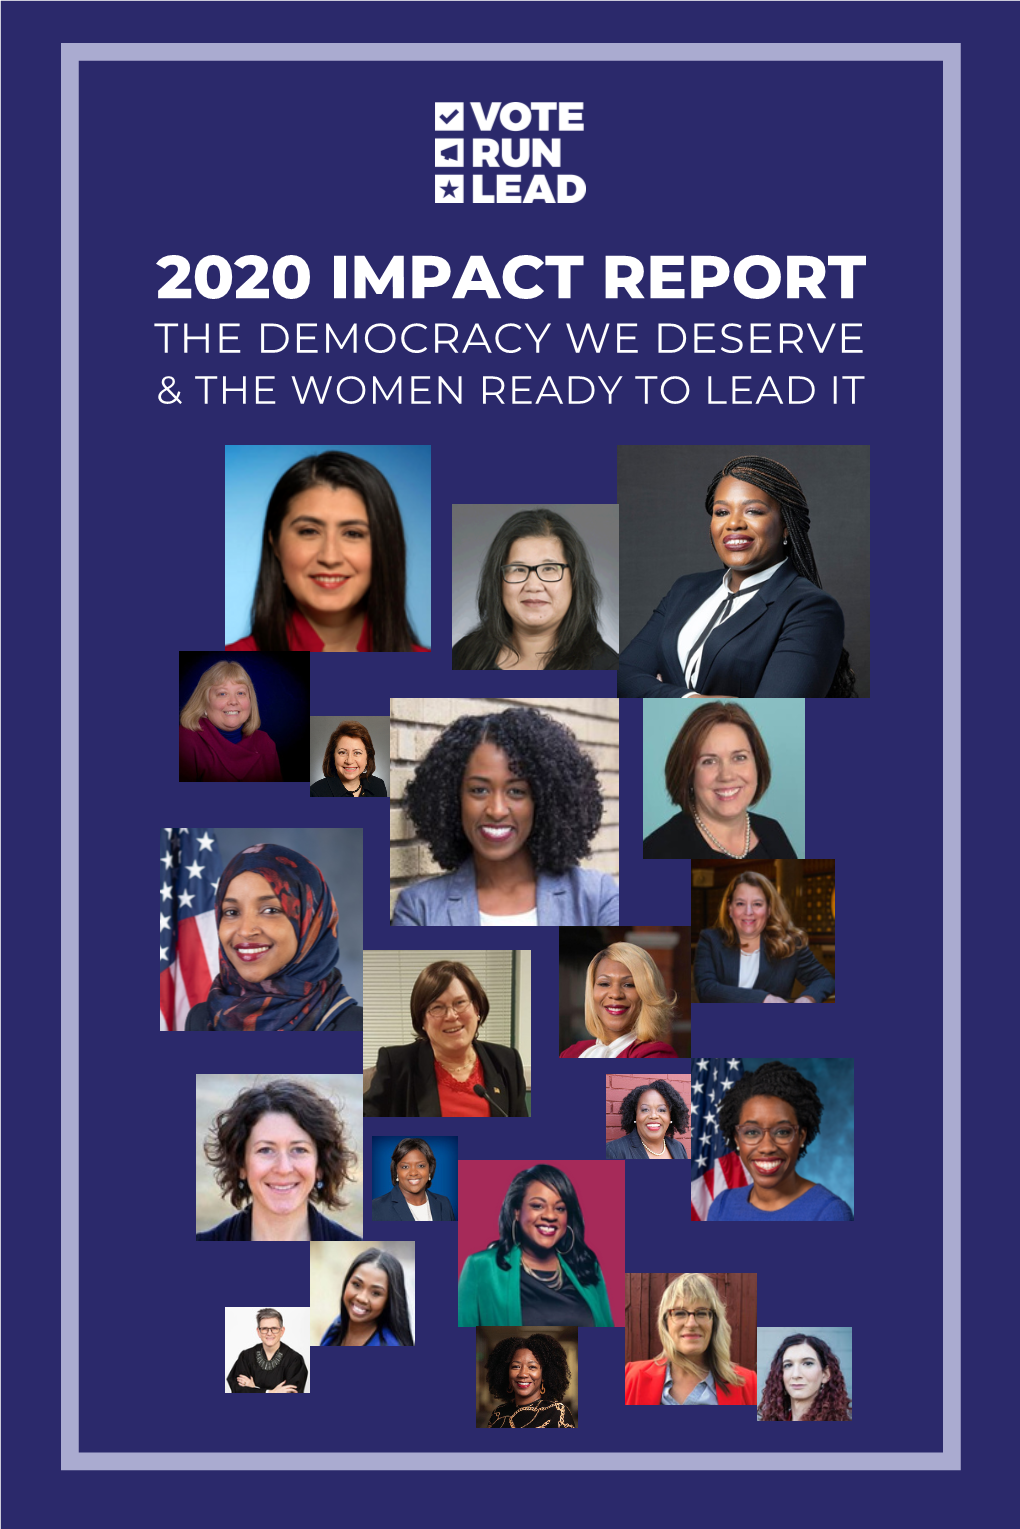 Vote Run Lead's 2020 Impact Report